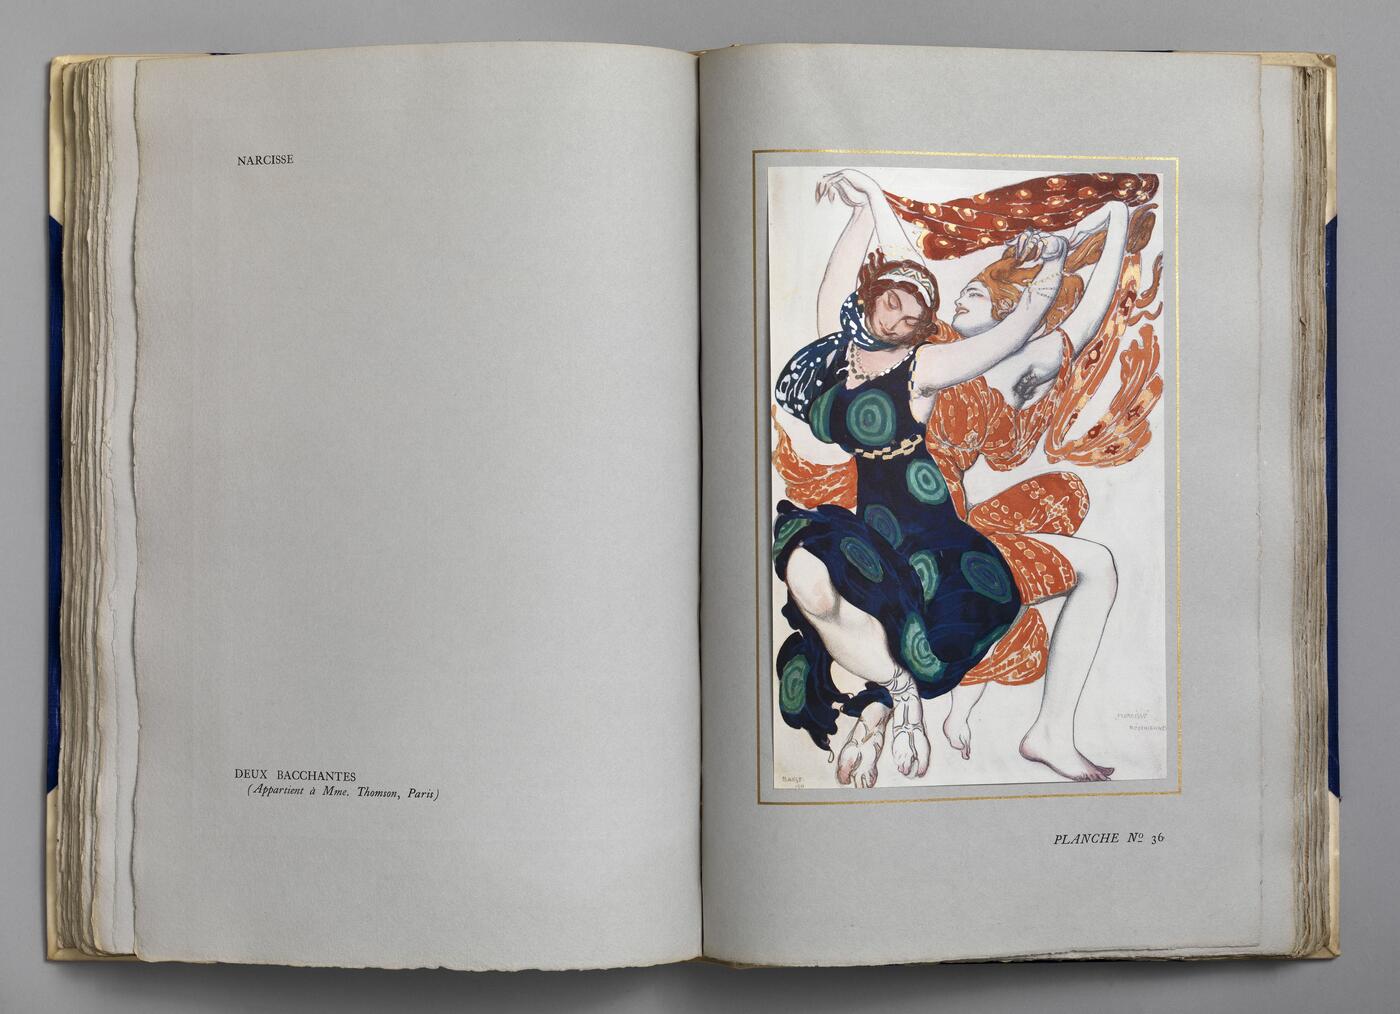 L'Art Décoratif de Léon Bakst. Essai critique par Arséne Alexandre. Notes sur les ballets par Jean Cocteau, Paris, Maurice de Brunoff, 1913.